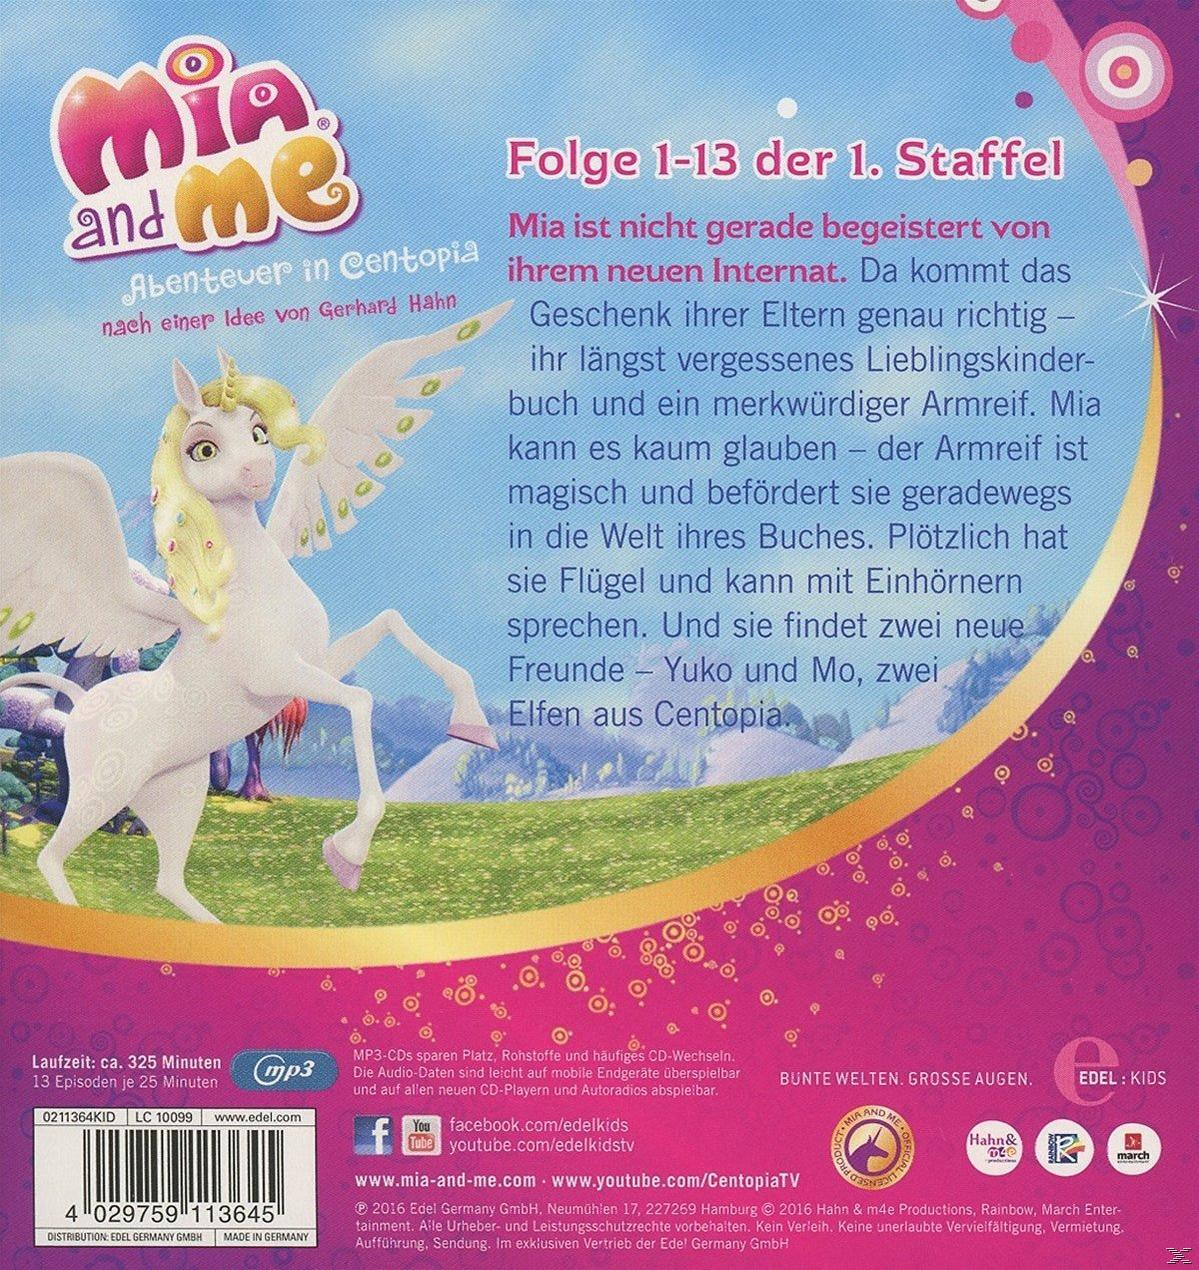 Mia And Me 1-13) - (CD) - Staffelbox (Staffel 1.1,Folge